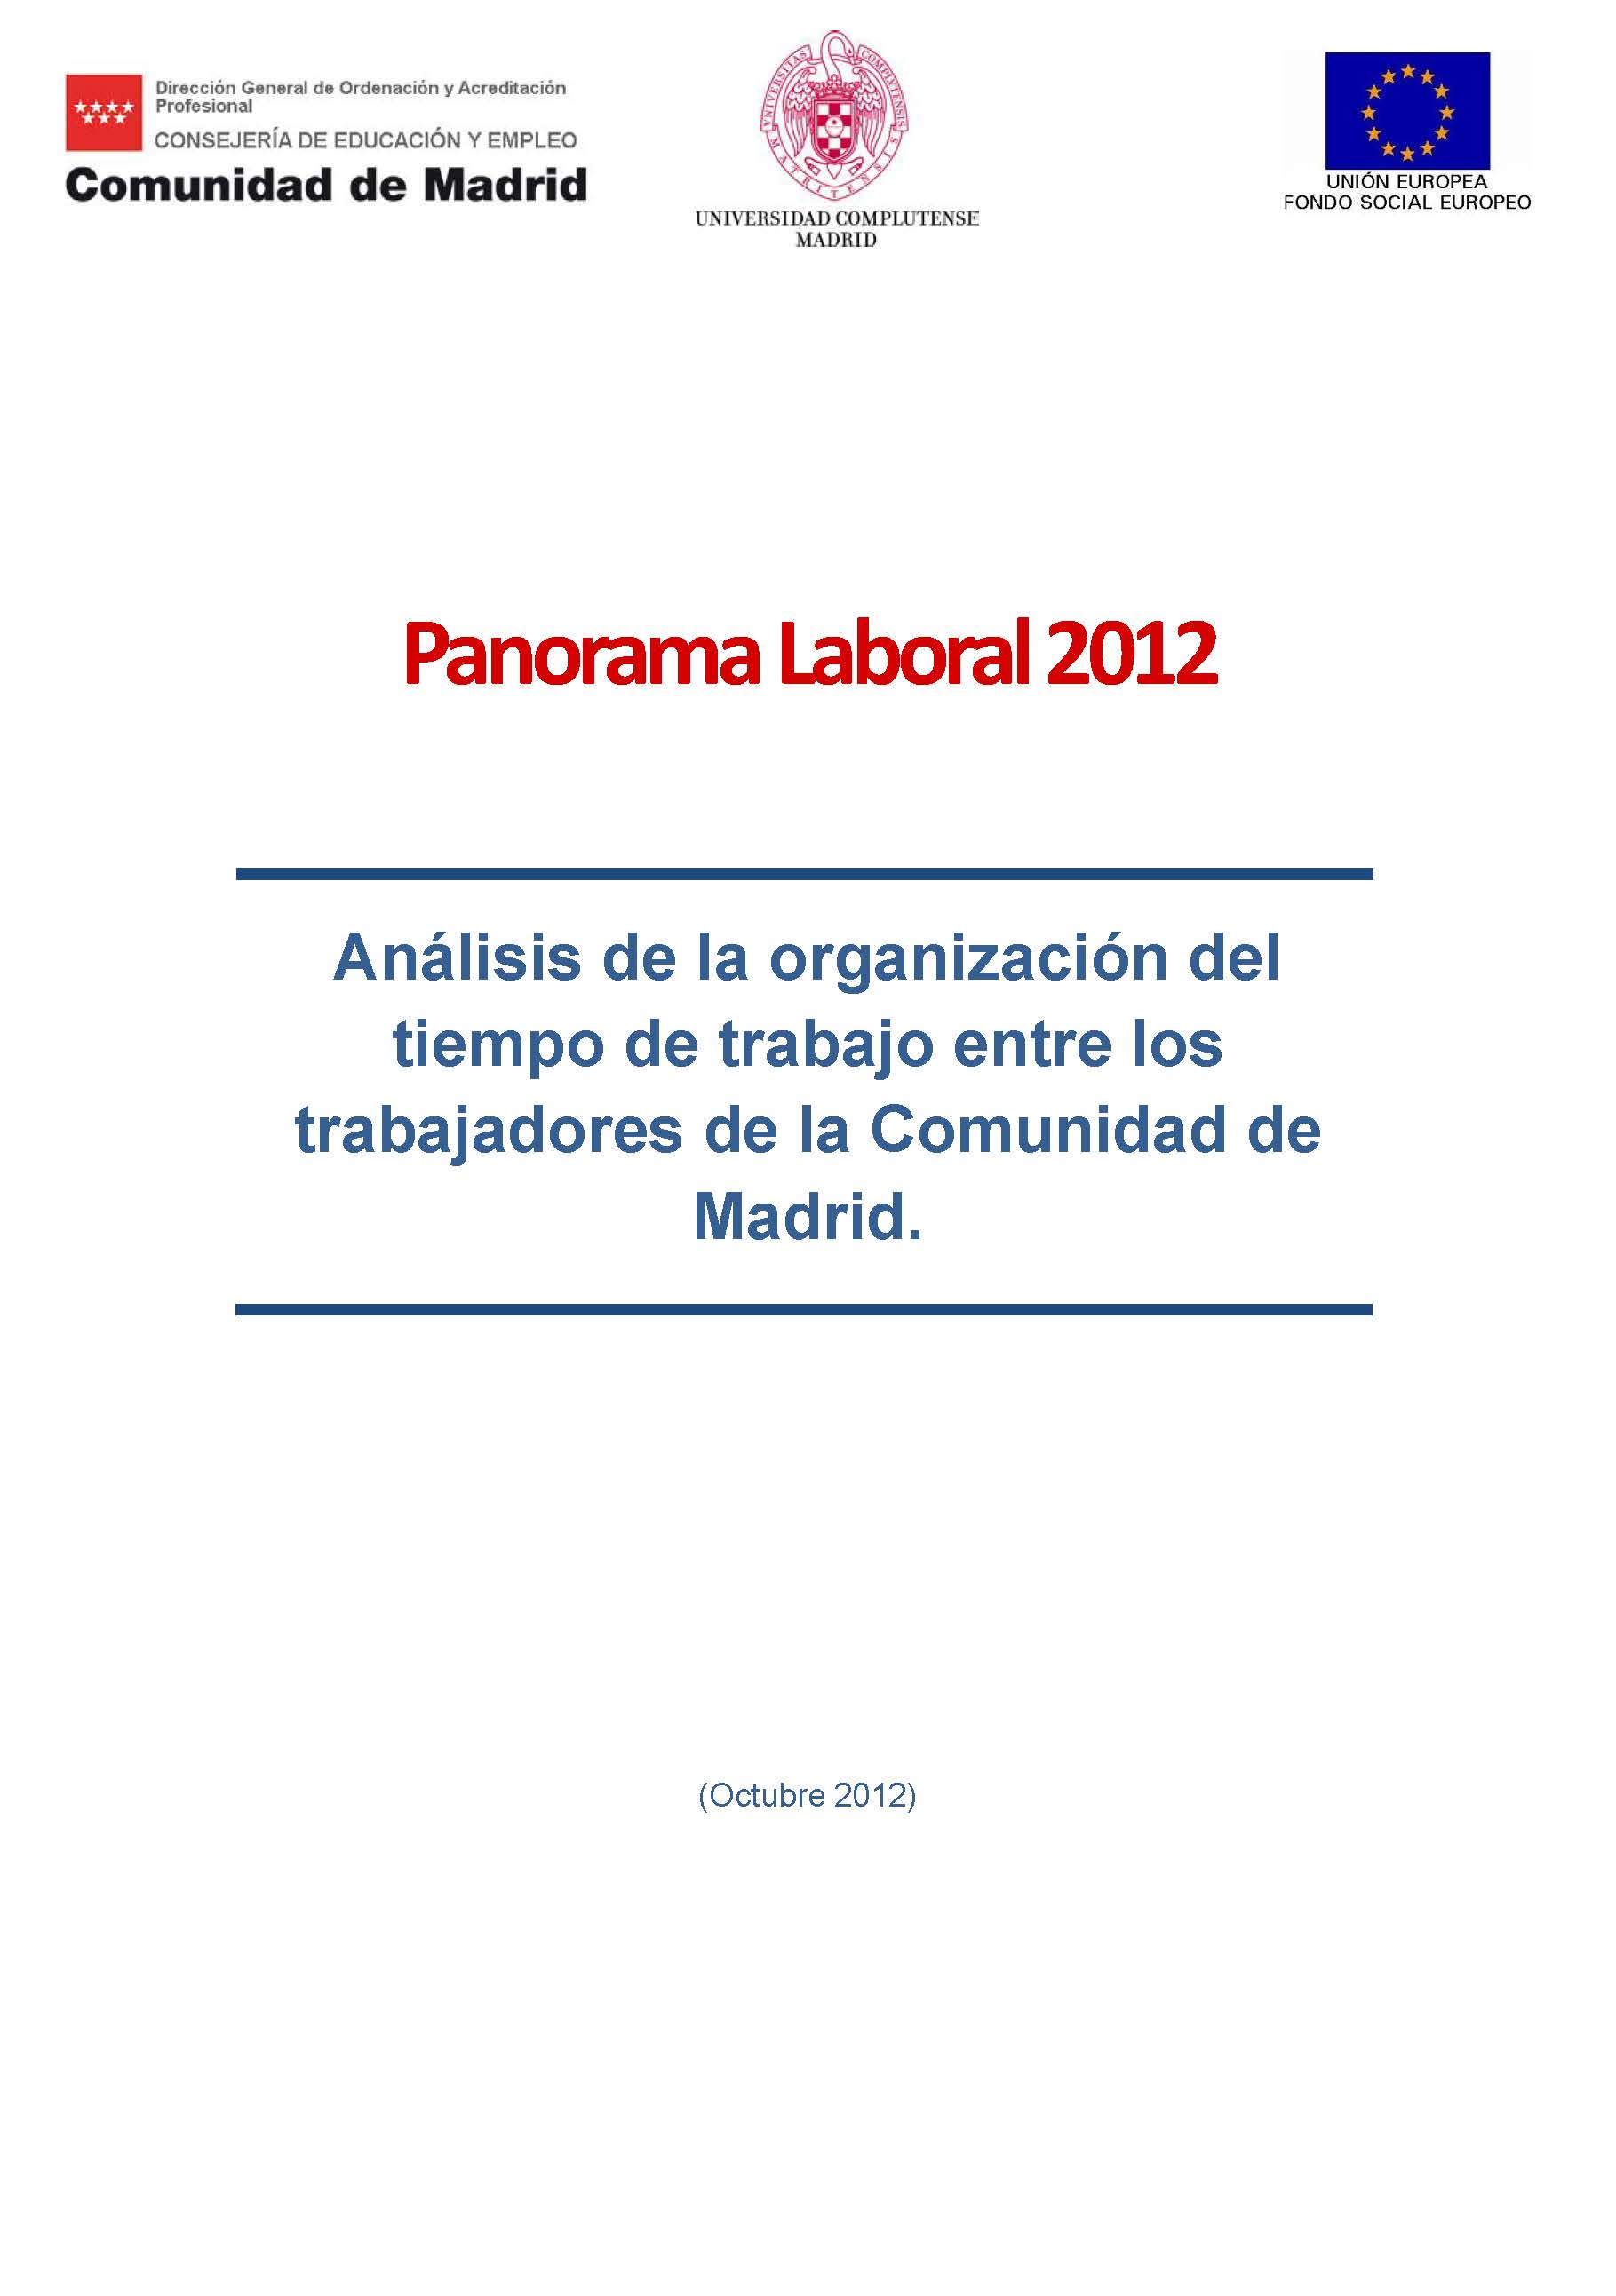 Portada de Panorama Laboral 2012. Análisis de la organización del tiempo de trabajo entre los trabajadores de la Comunidad de Madrid.